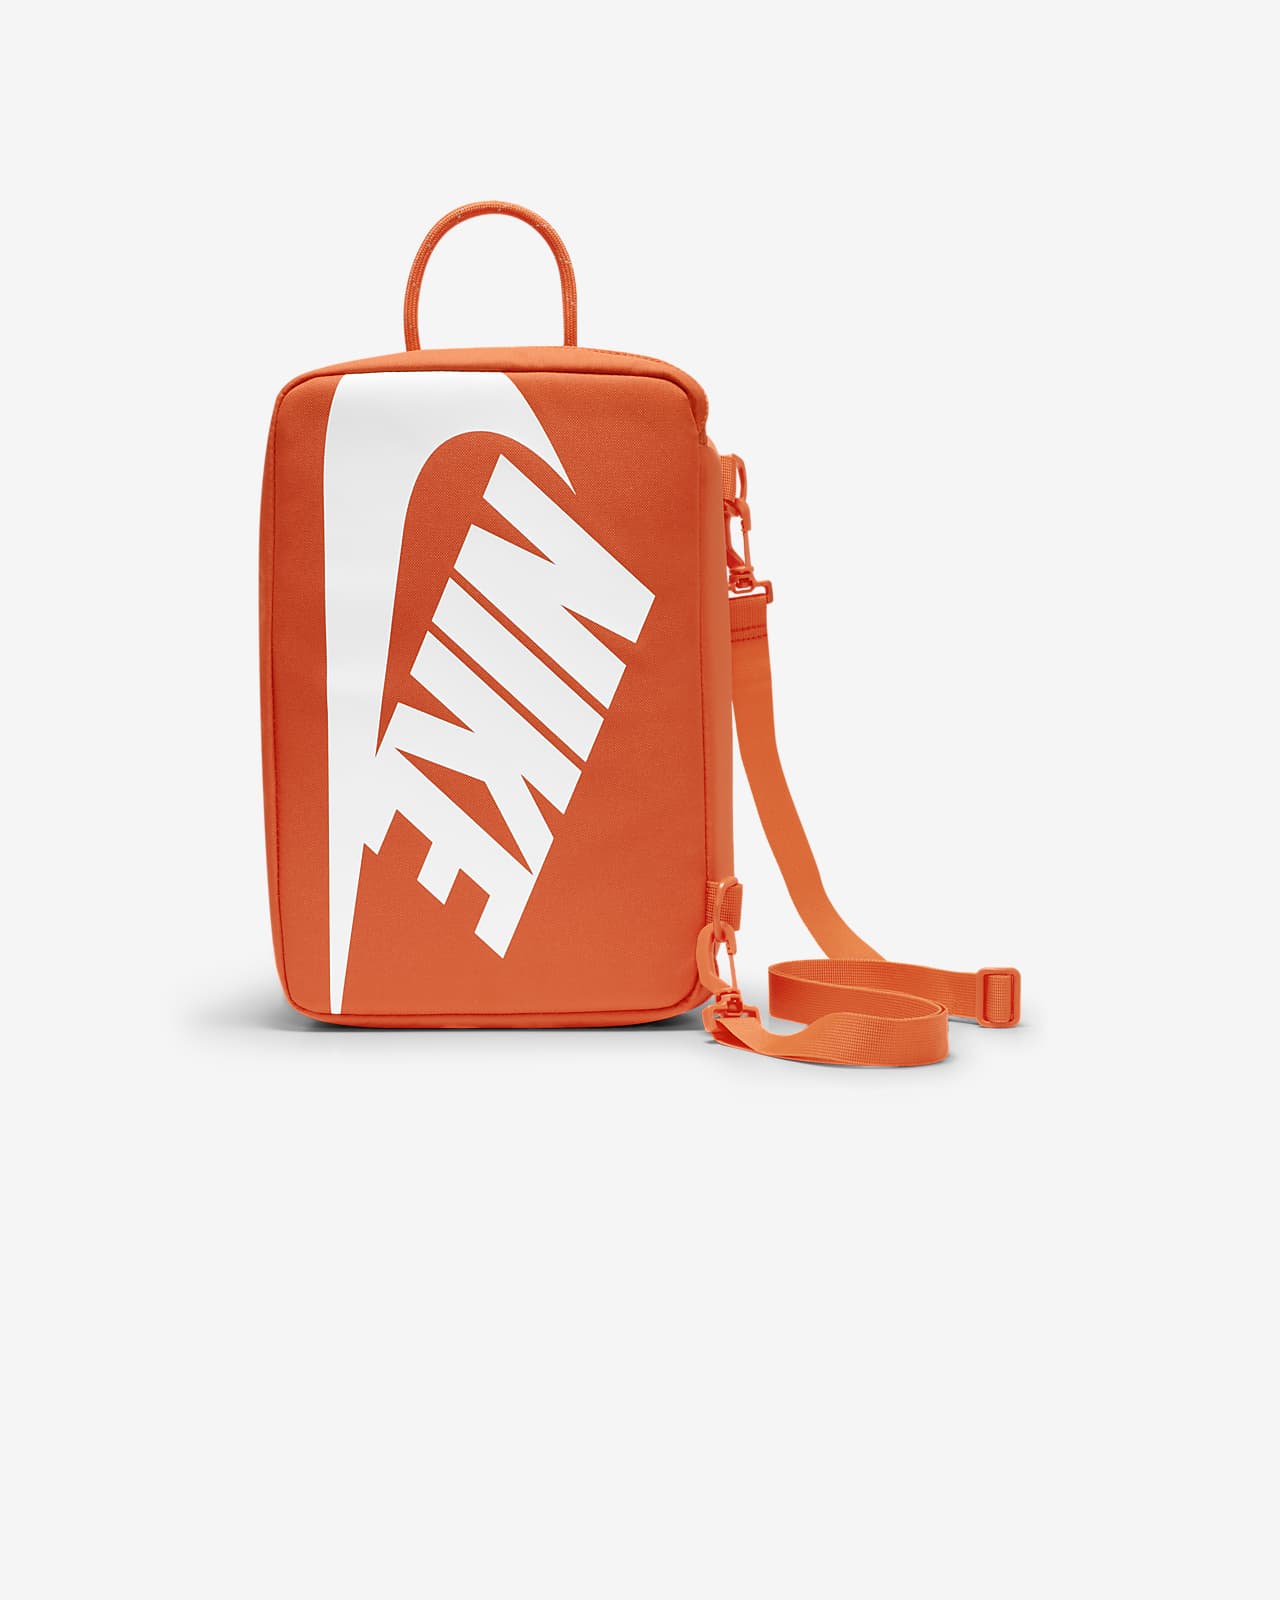 Black & White Nike Kids Elemental Backpack Bags | schuh